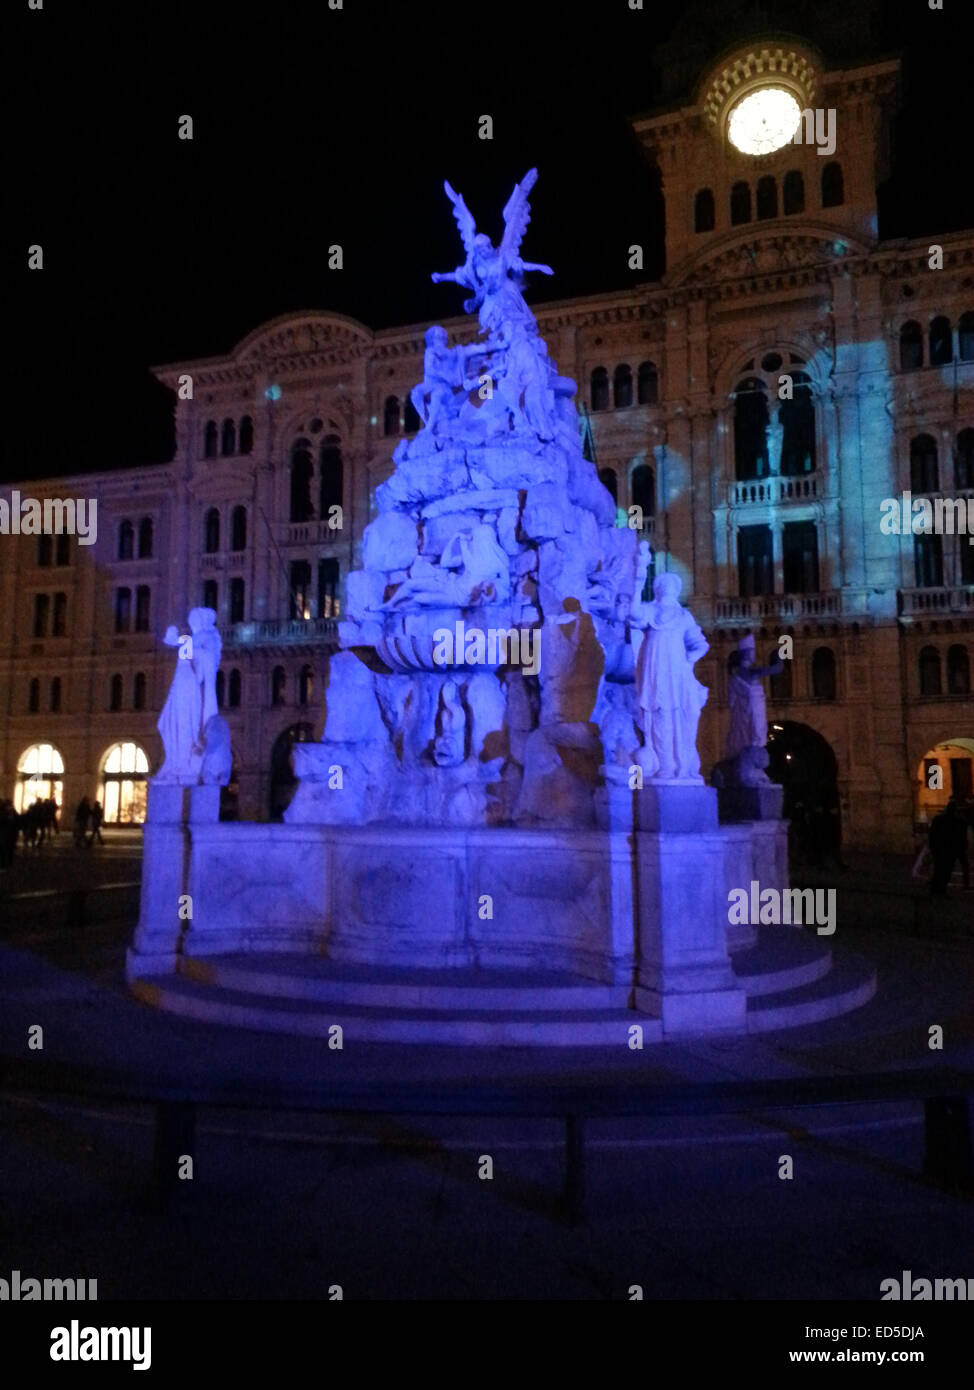 La fuente de los cuatro continentes construido en Trieste en el siglo XVII para magnificar el poder comercial de la ciudad Foto de stock